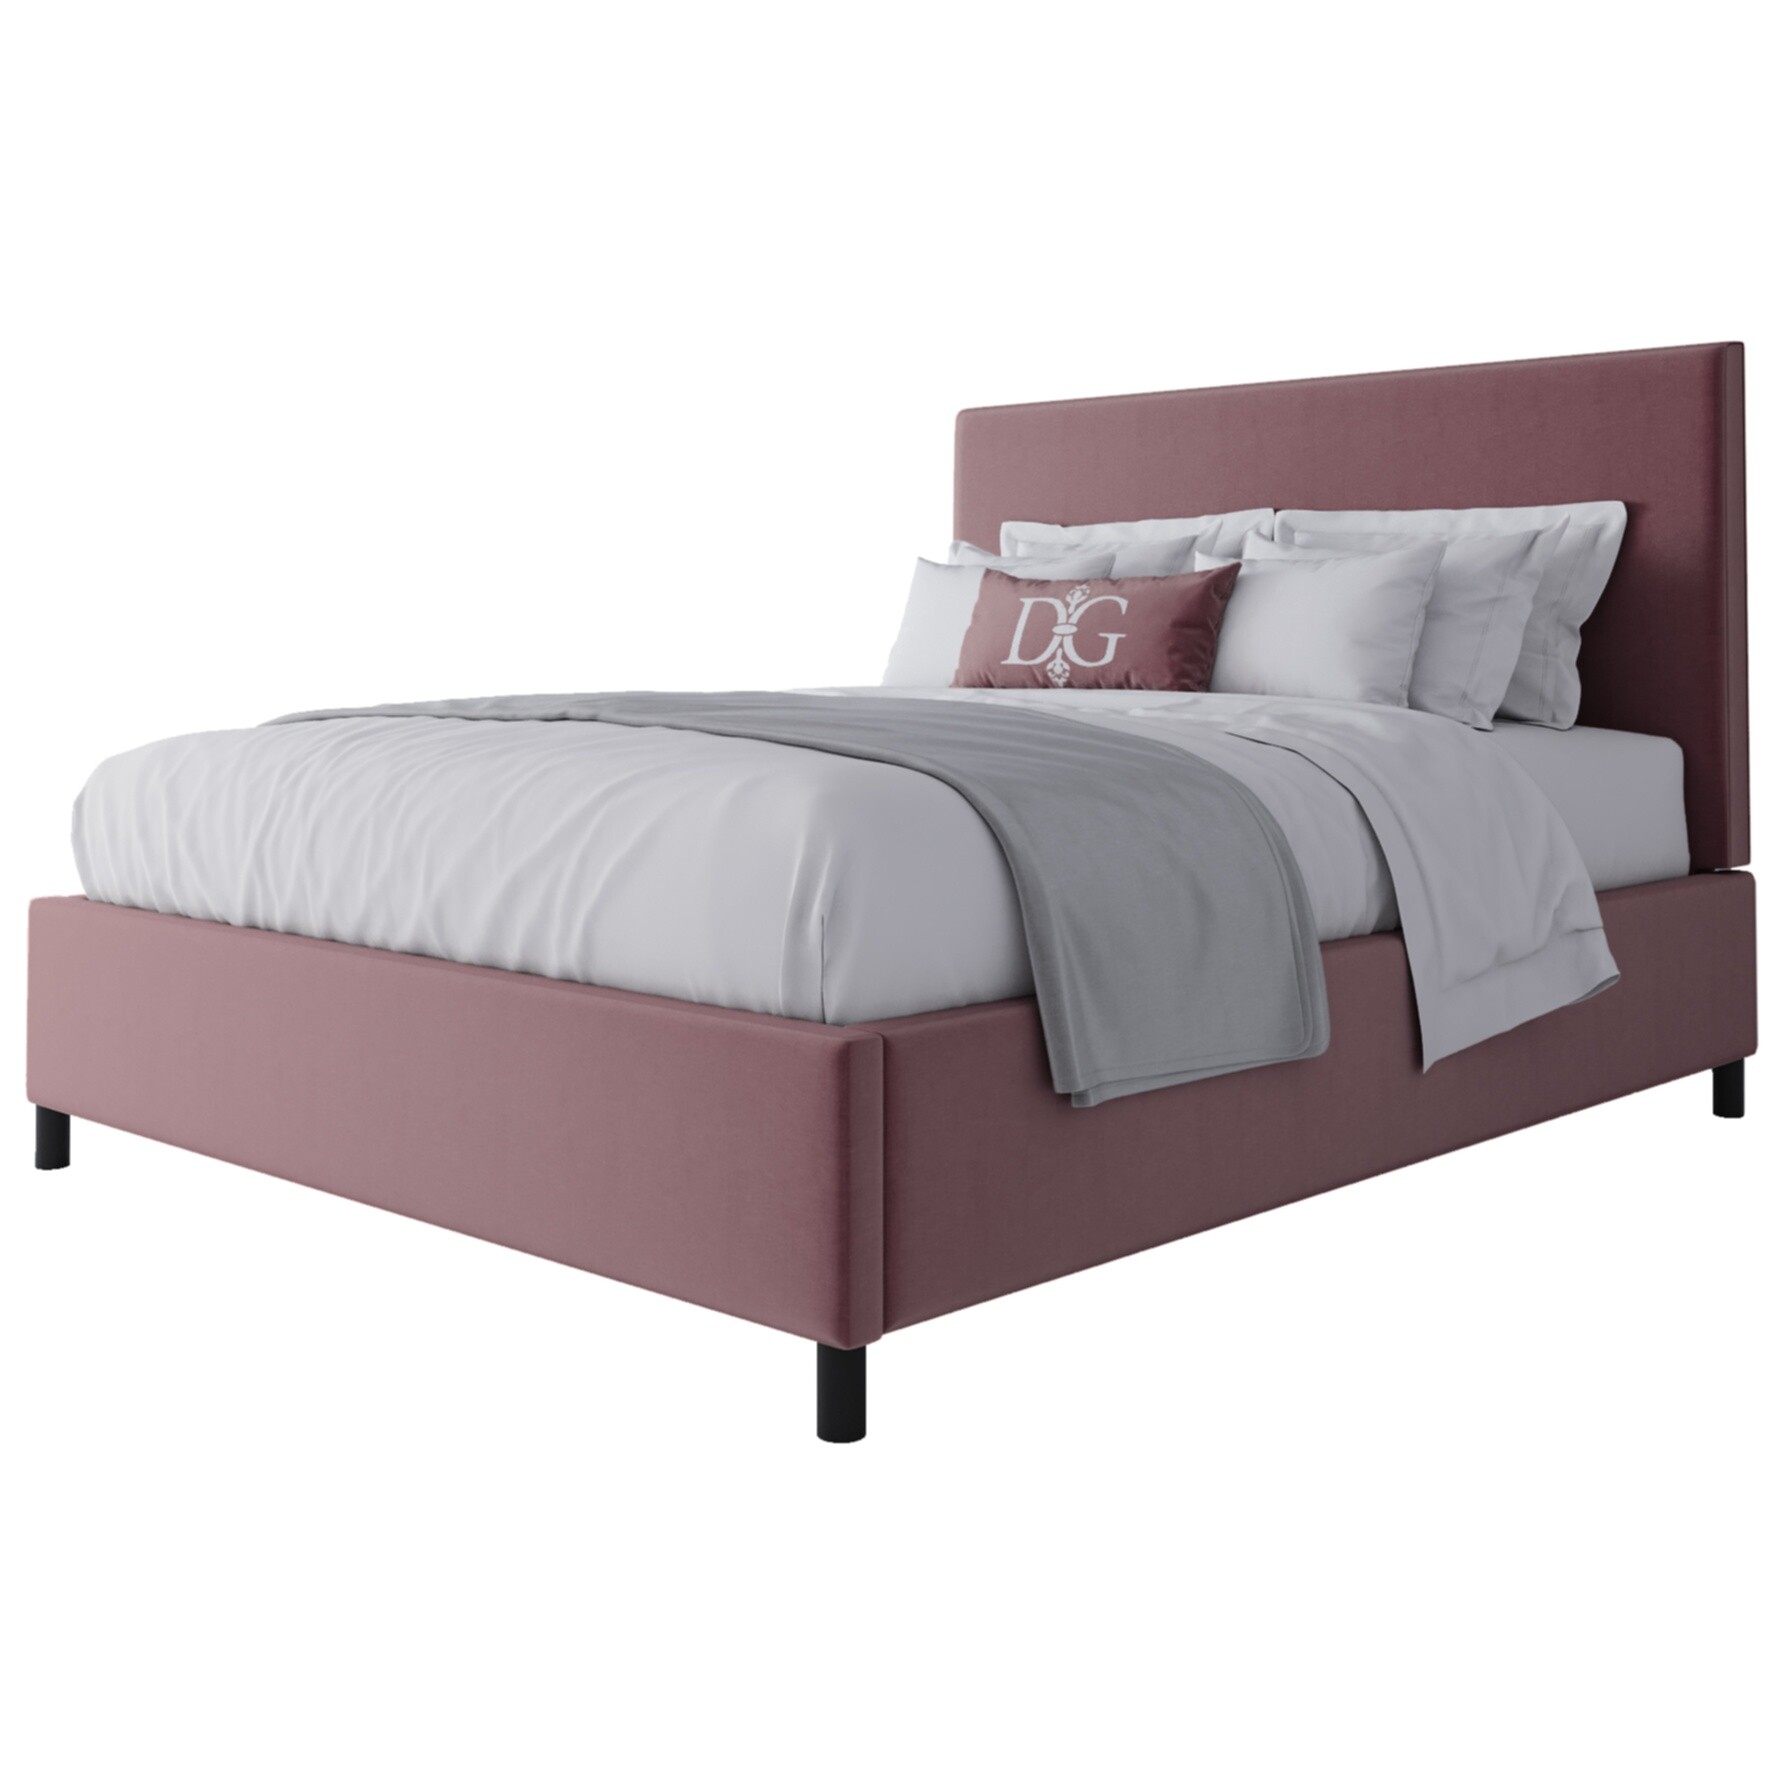 Кровать двуспальная 160х200 розовая Novac Platform